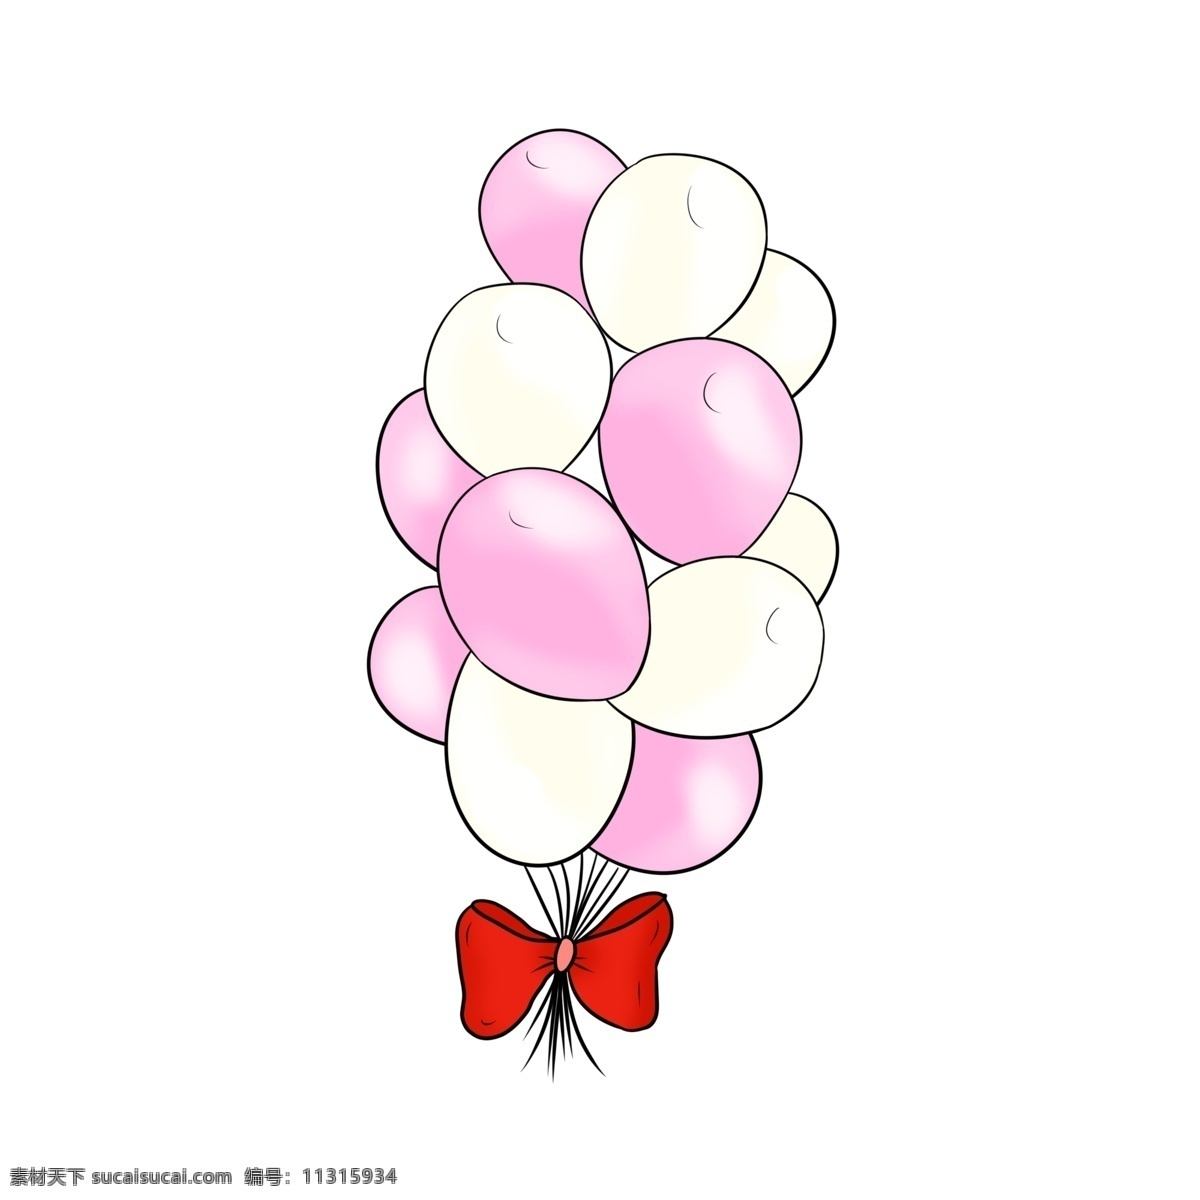 婚礼 气球 装饰 插画 婚礼气球 紫色气球 白色气球 气球装饰 红色蝴蝶结 浪漫 婚庆 漂浮的气球